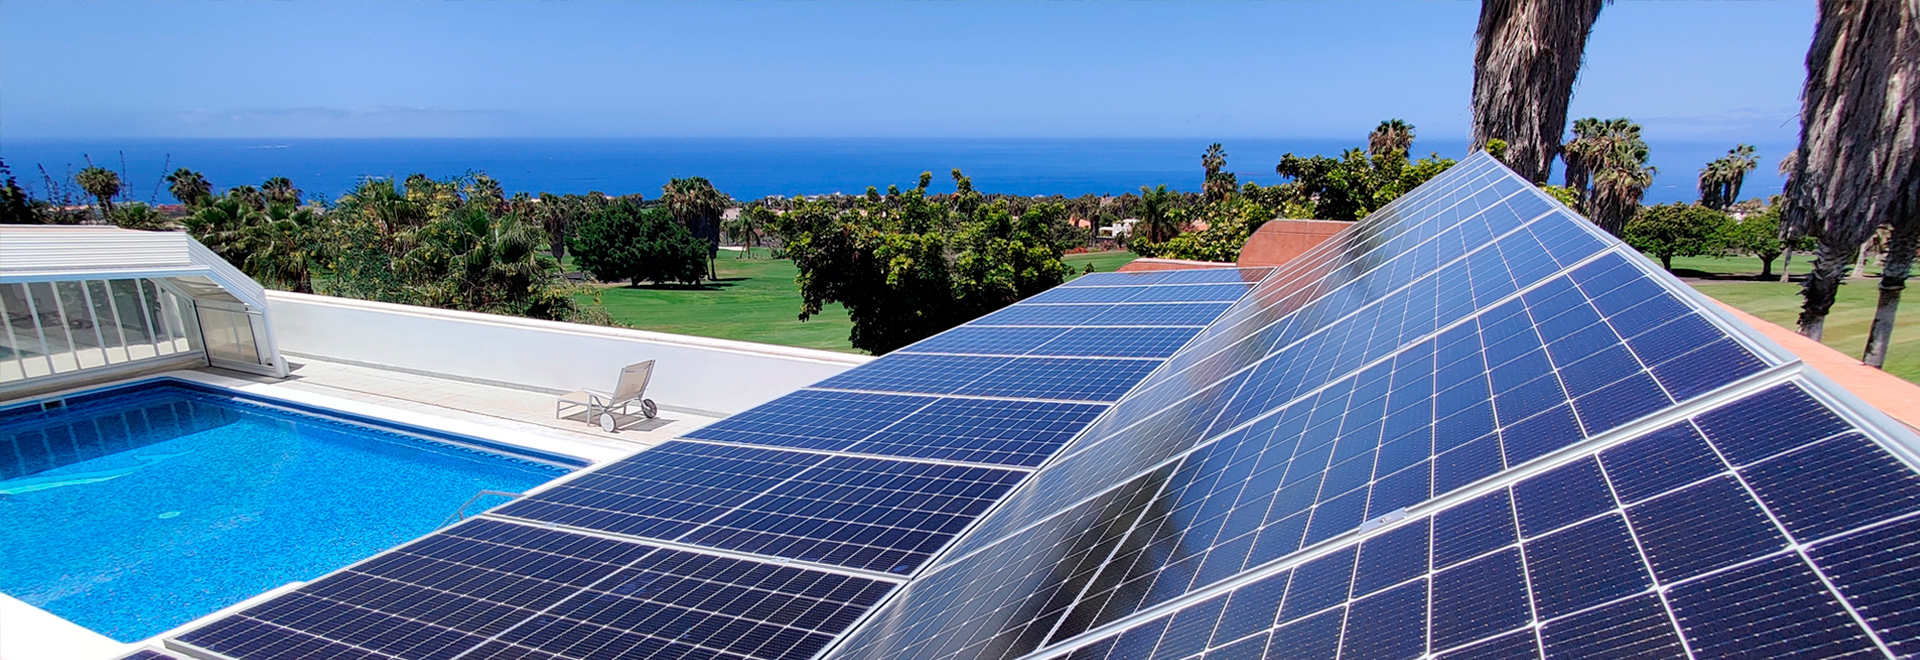 Instalación de placas solares: ¿cuantas placas necesito poner en casa?